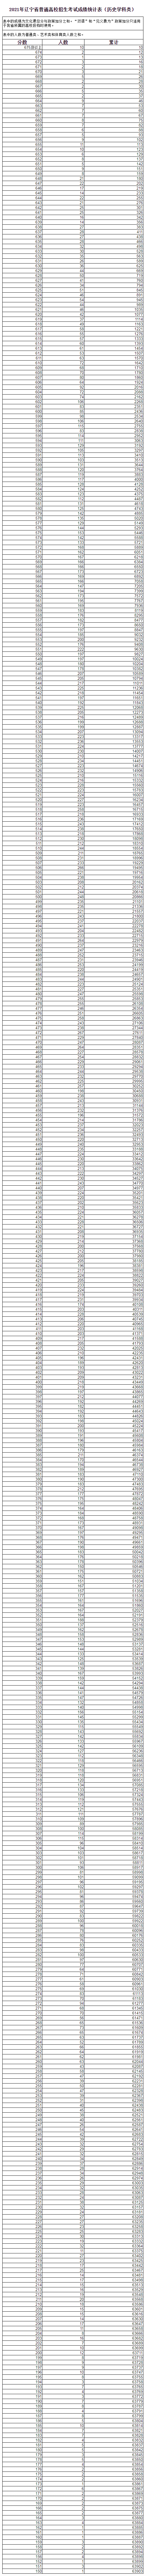 2021年辽宁高考成绩分段统计表（历史学科类）